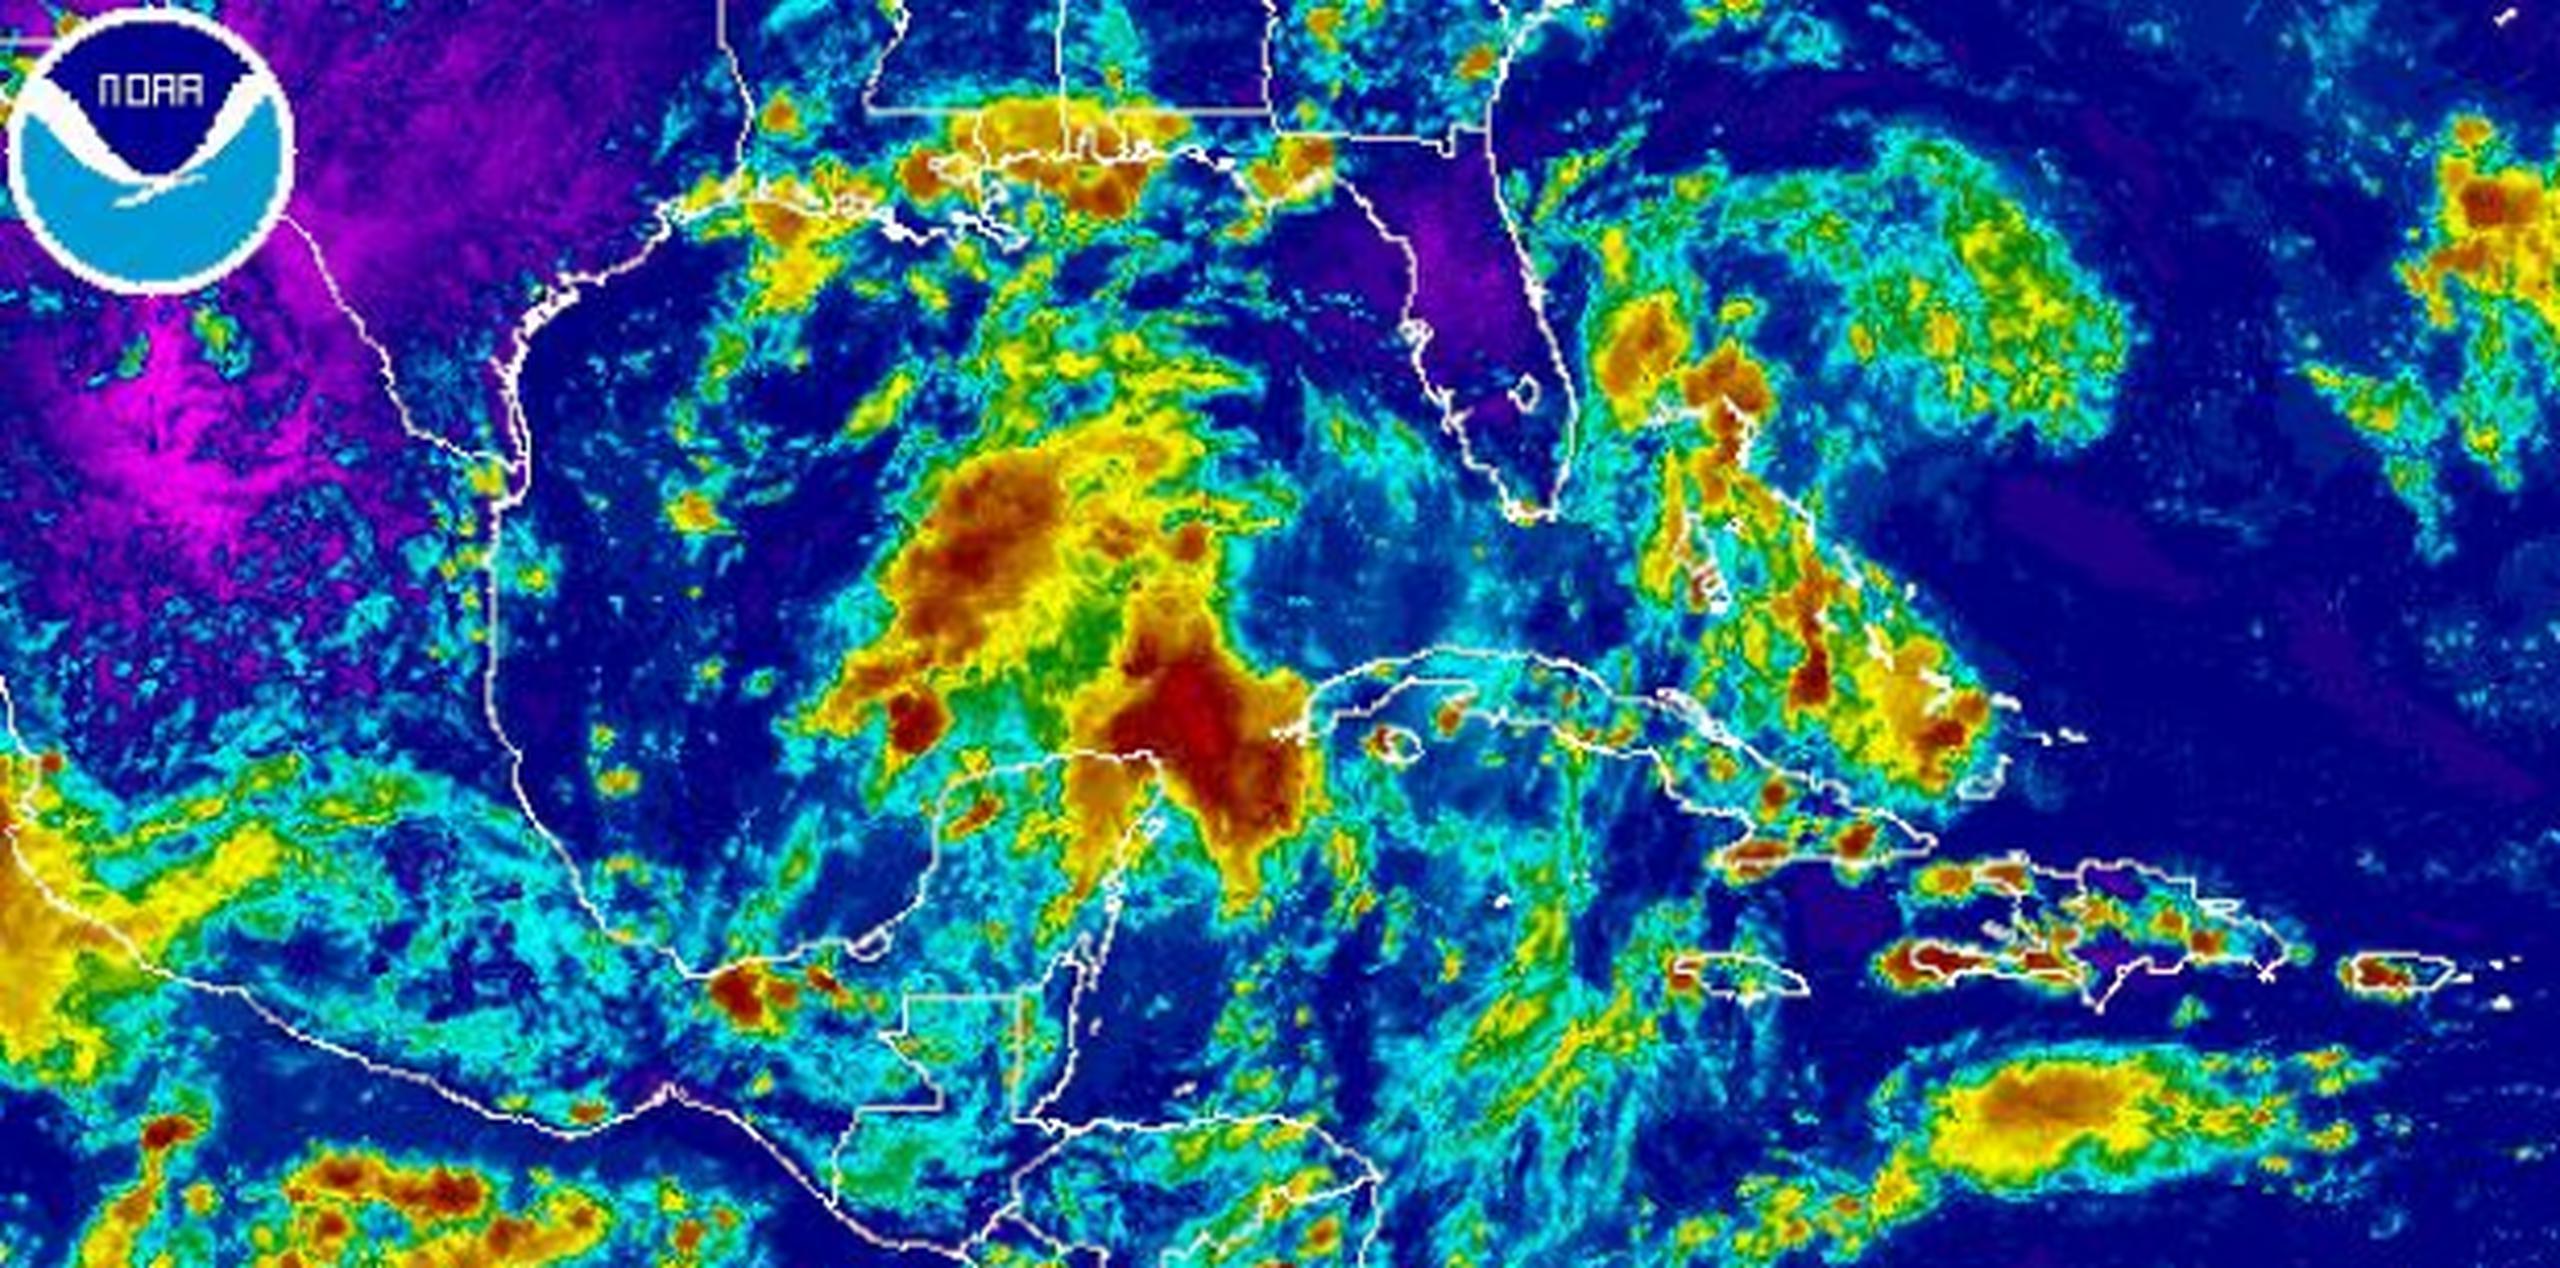 Harvey provocaría fuertes marejadas y vientos con fuerza de tormenta tropical o de huracán. (NOAA)